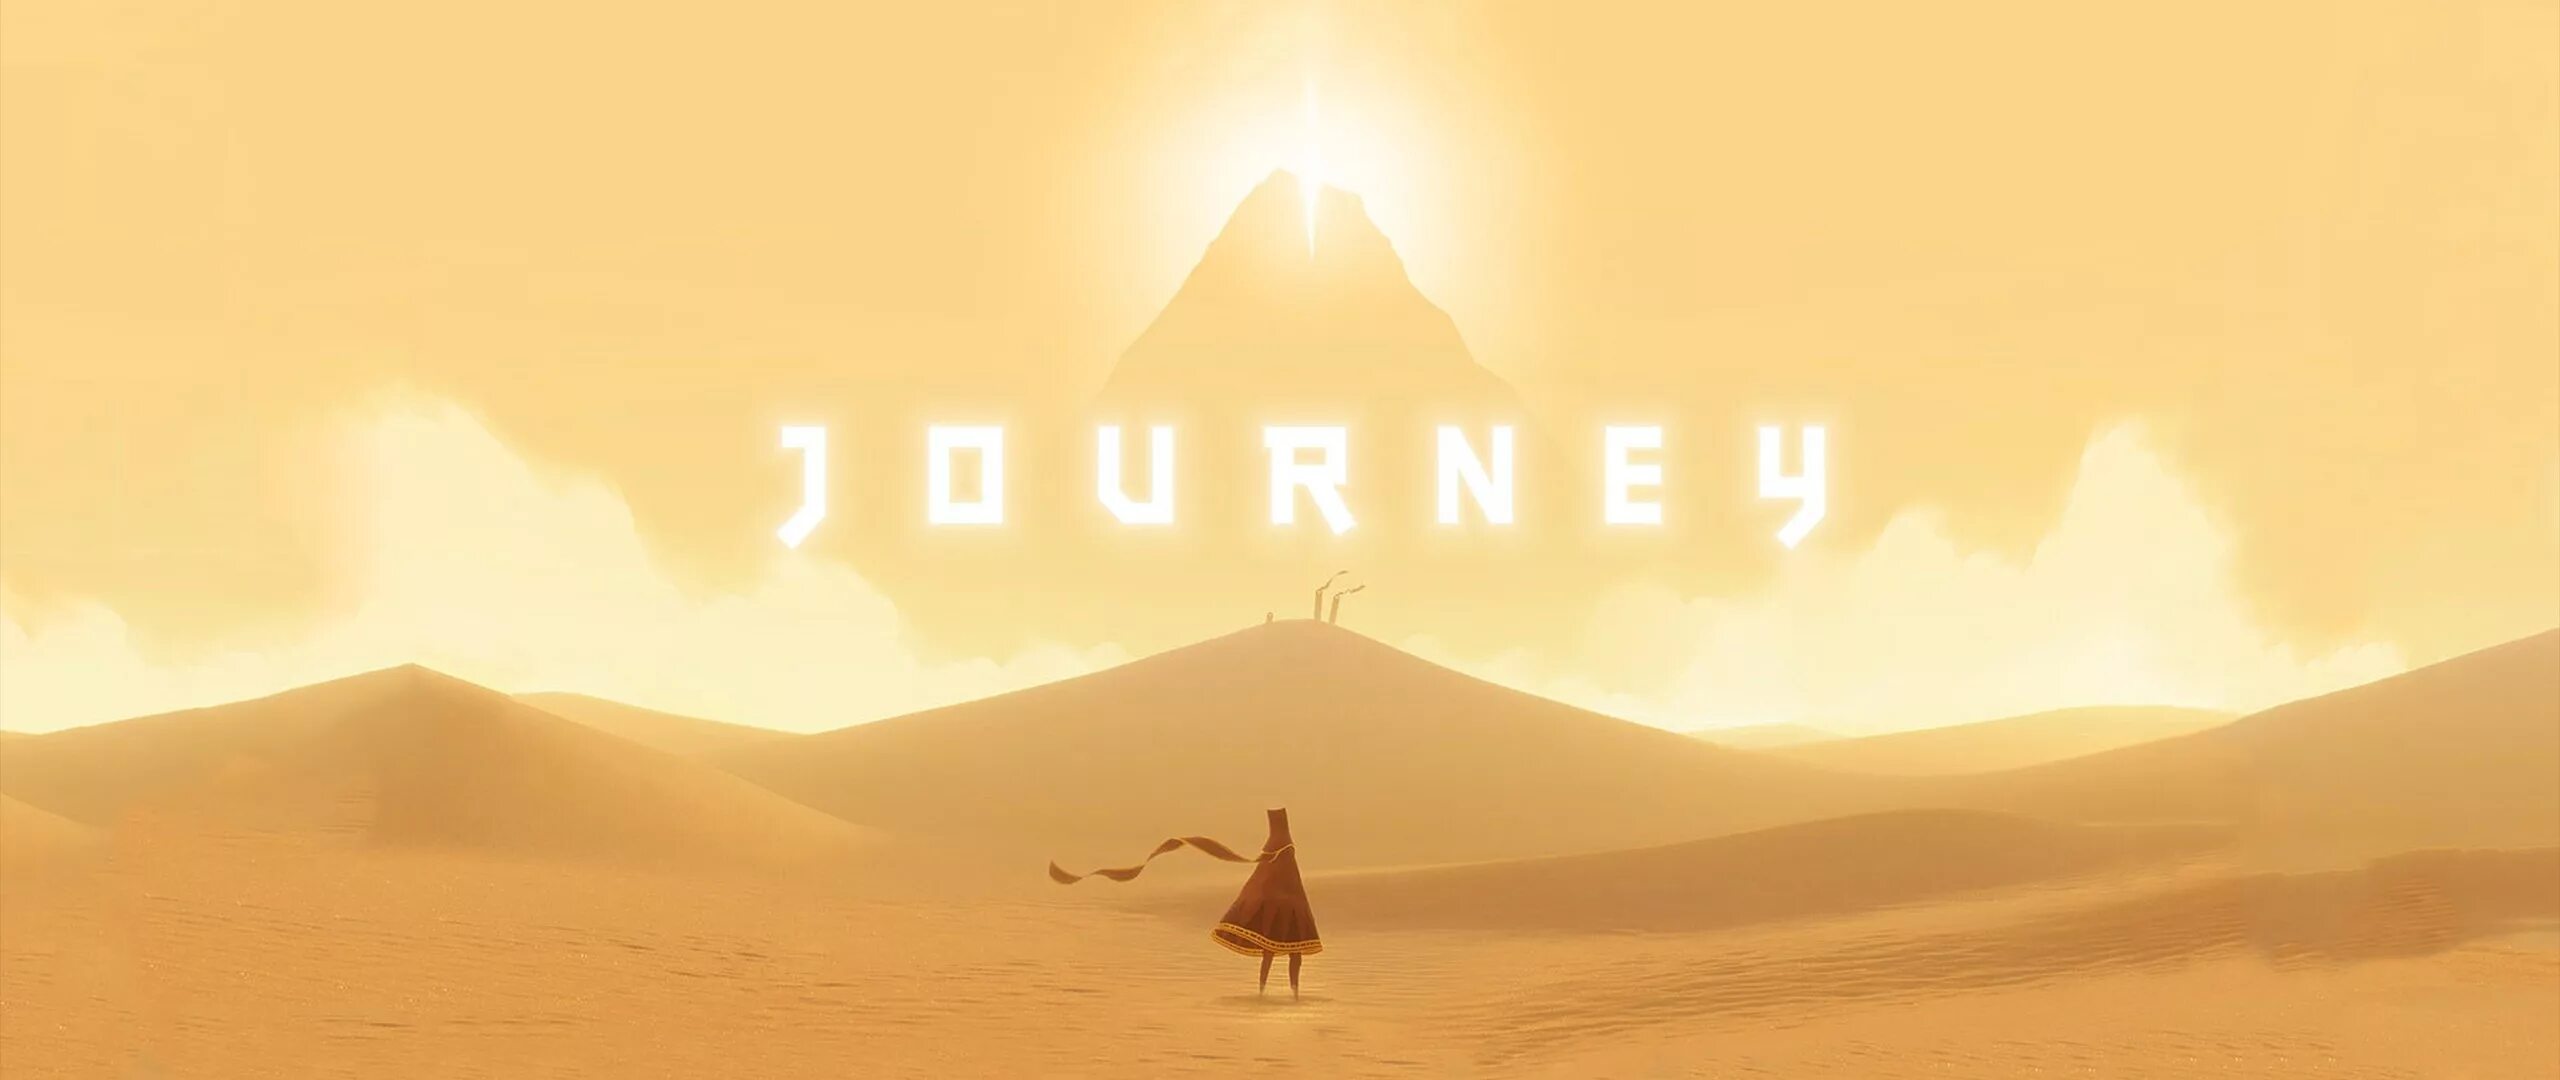 Journey name. Джорни игра. Journey (игра, 2012). Джорни путешествие игра. Игра про пустыню.